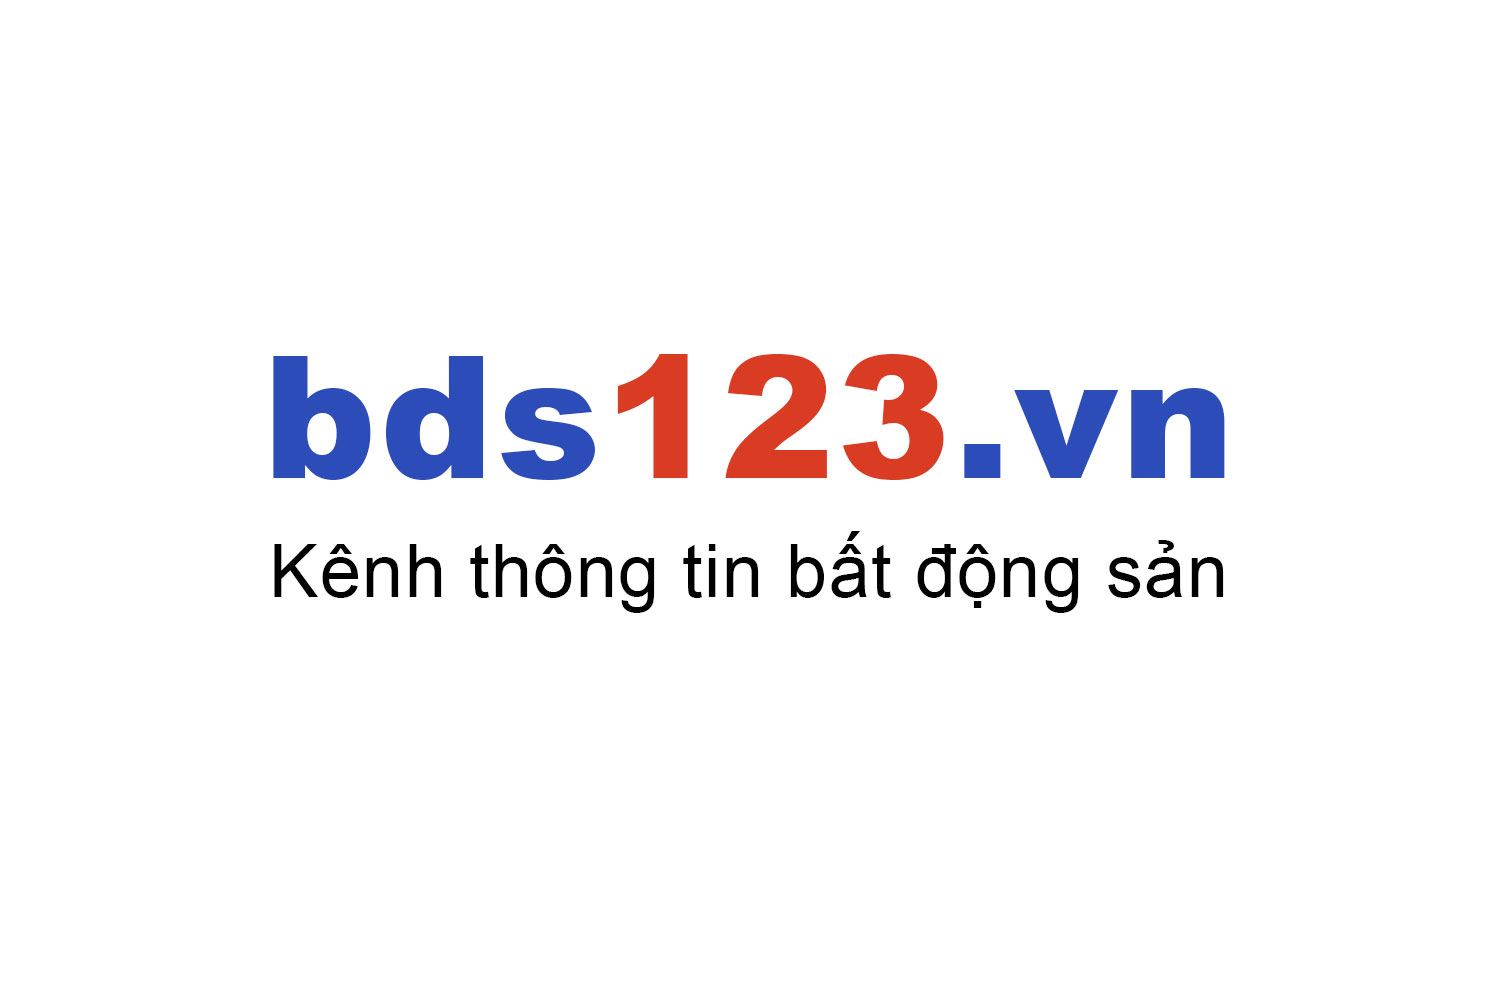 Mua bán chung cư Hà Đông ưu đãi giá tốt T10/2022 - Bds123.vn